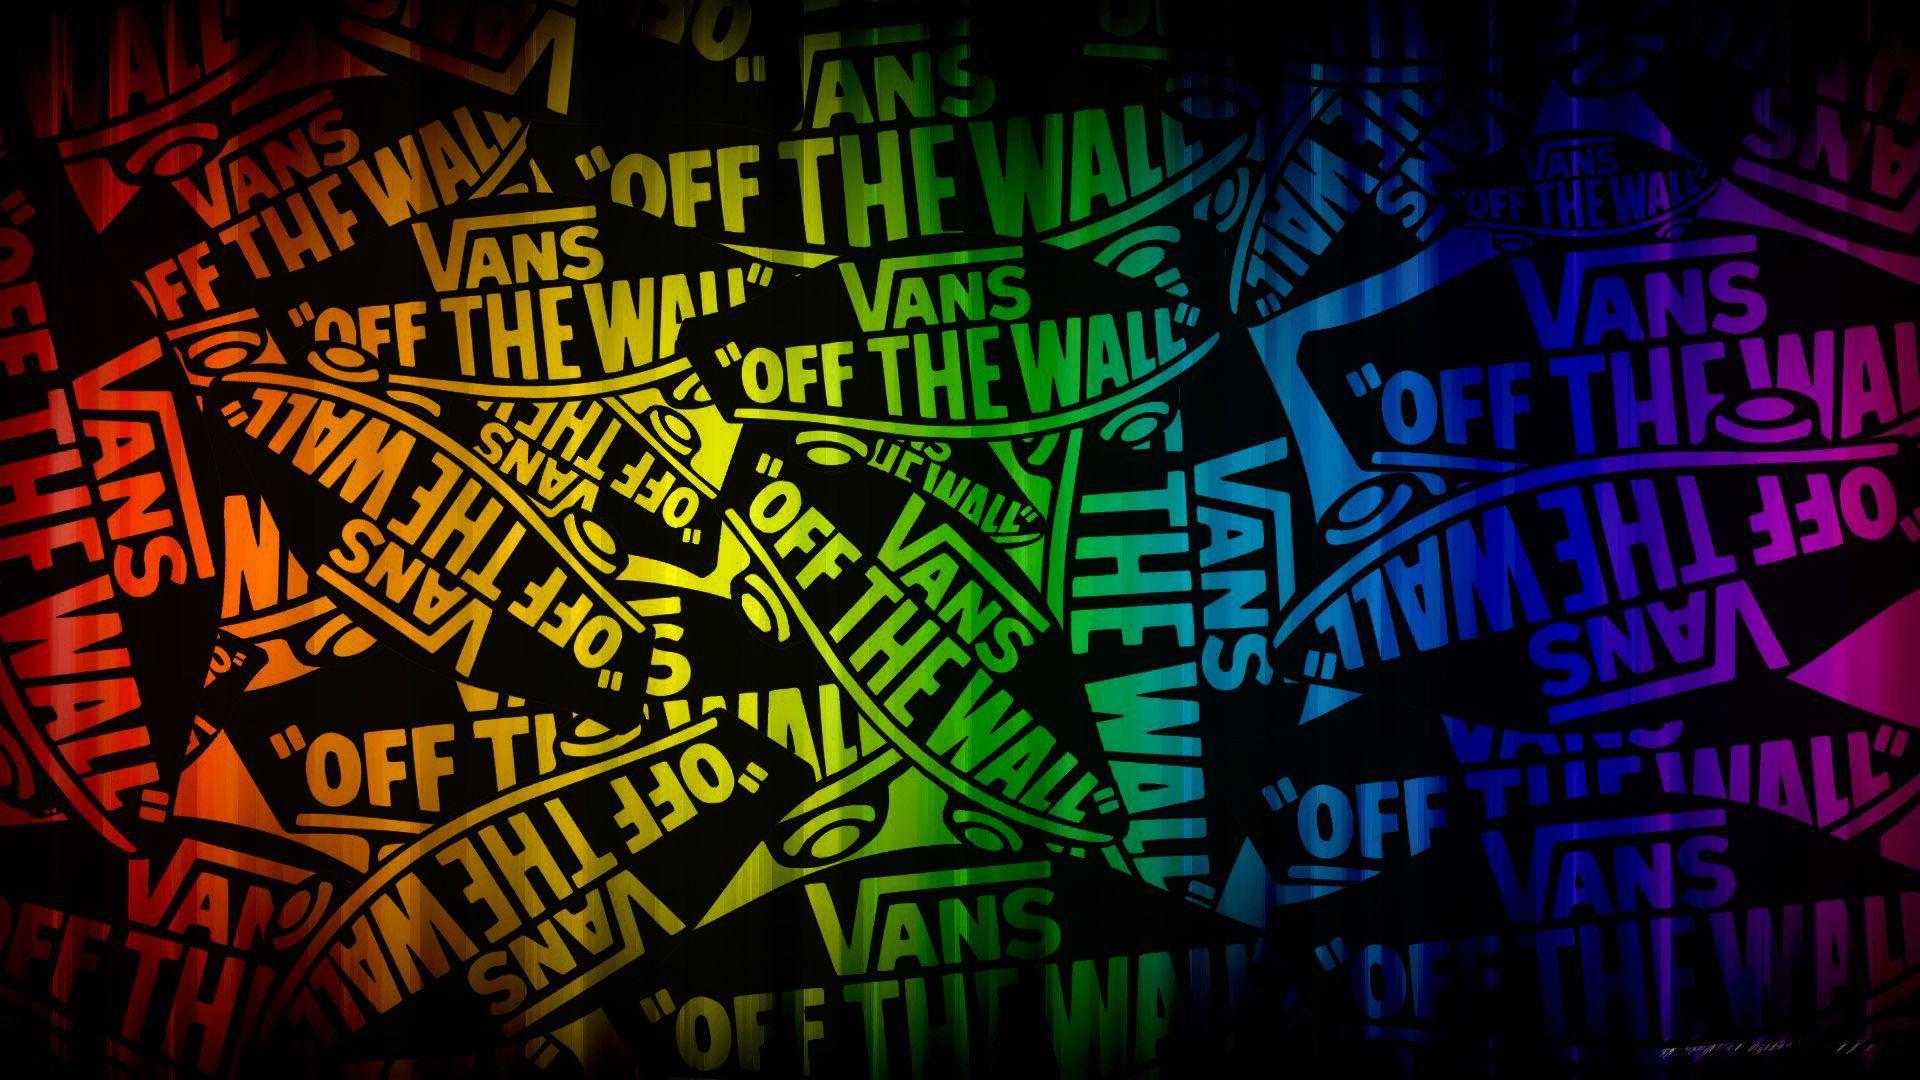 Cool Vans Wallpapers Wallpapersafari Off The Wall By Ceejaydejesus